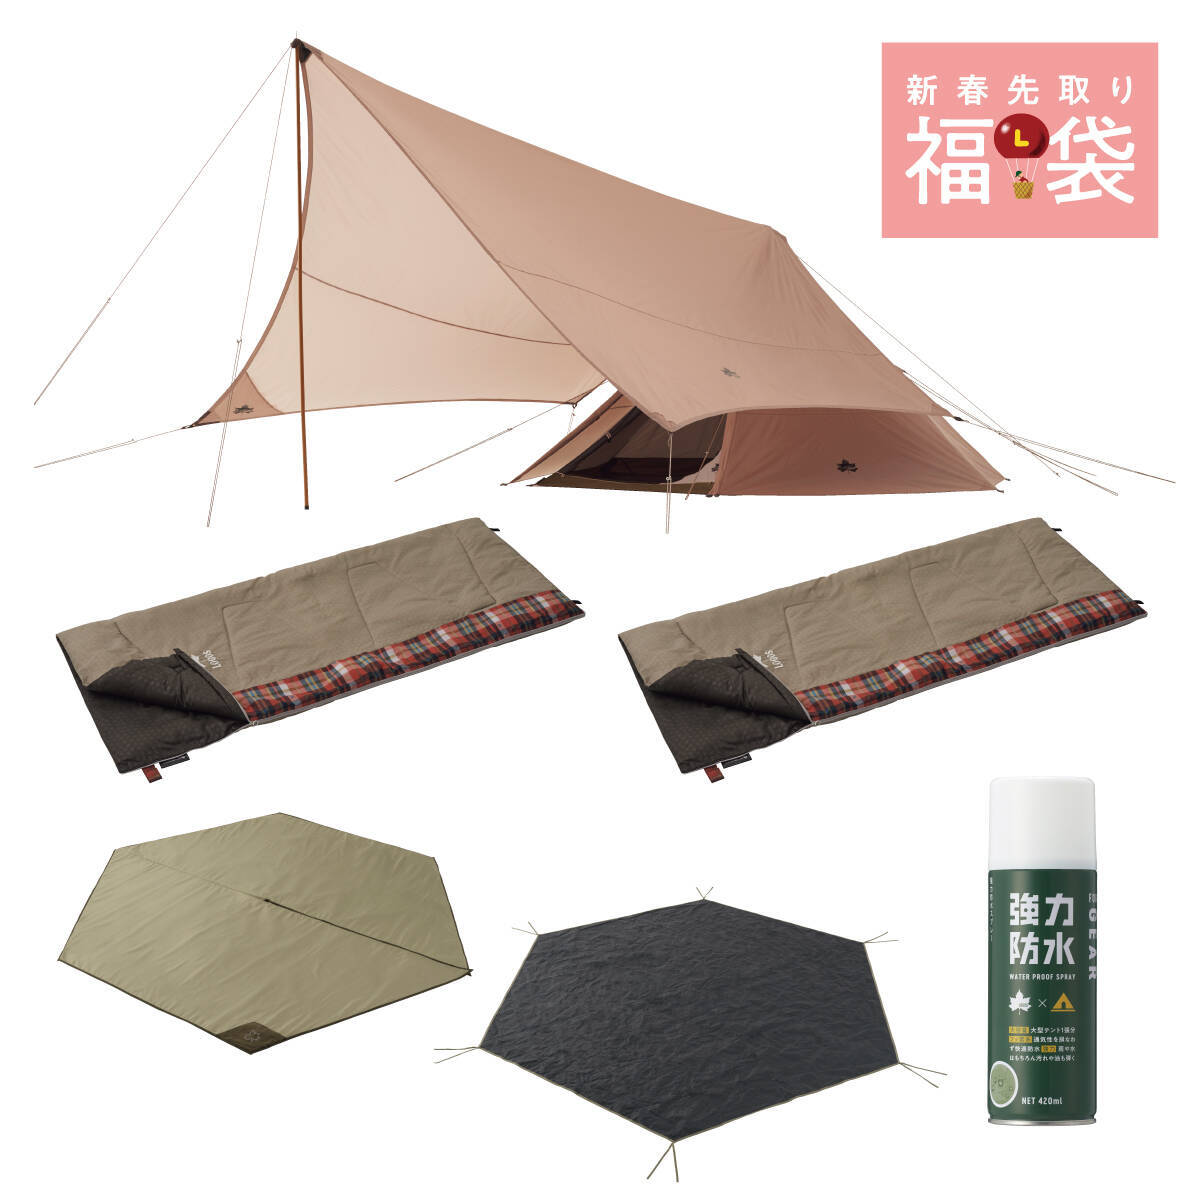 初心者でも組み立てやすいテントから、ファミリーキャンプに最適なテントまで！ LOGOS「2023年新春先取り福袋」発売中